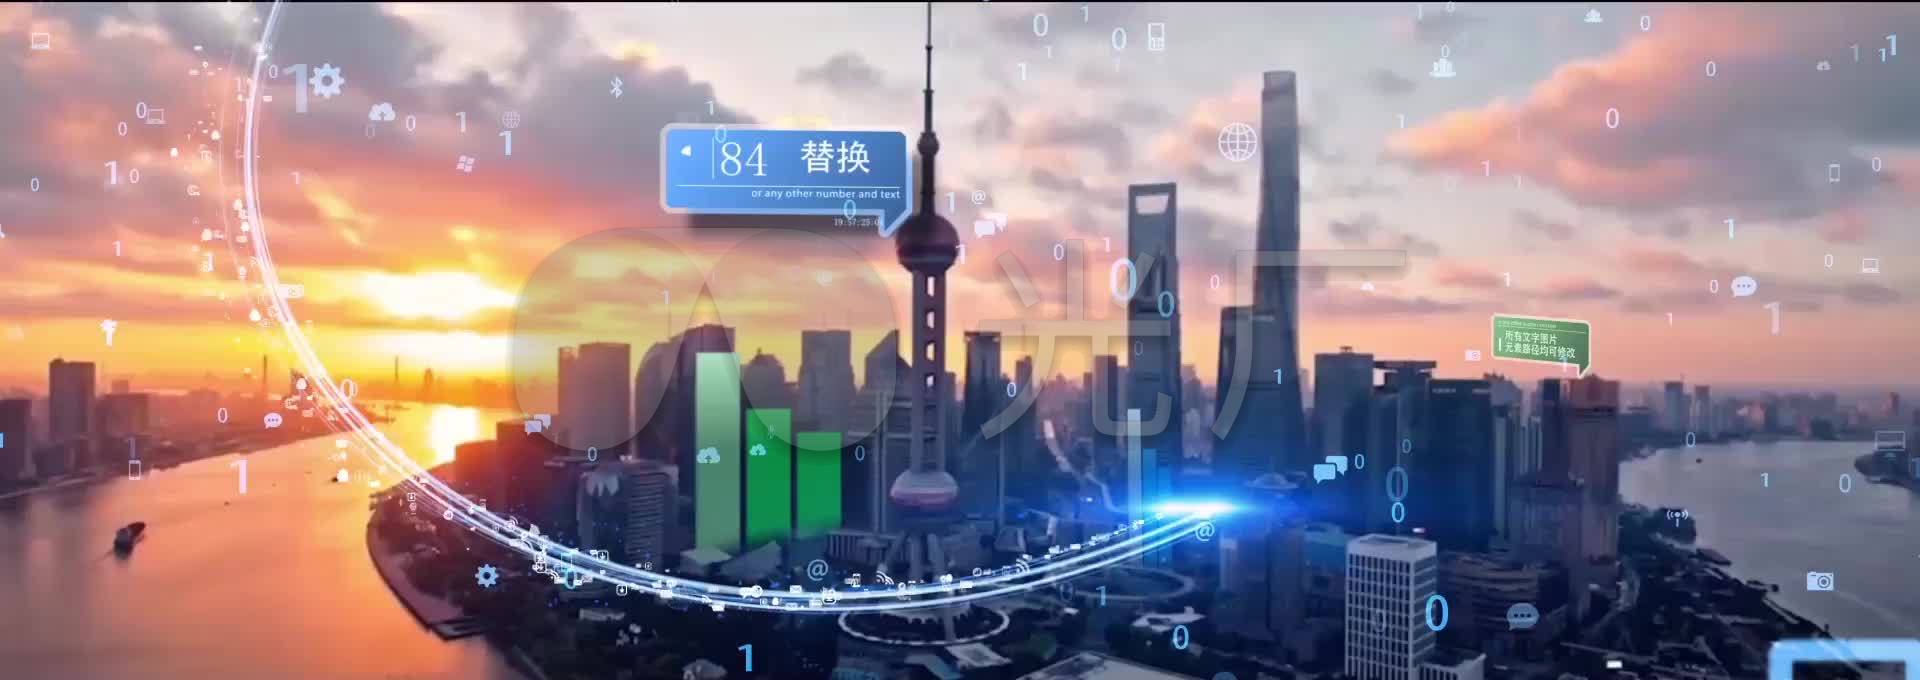 原创上海互联网光线城市特效AE合成_AEcc15